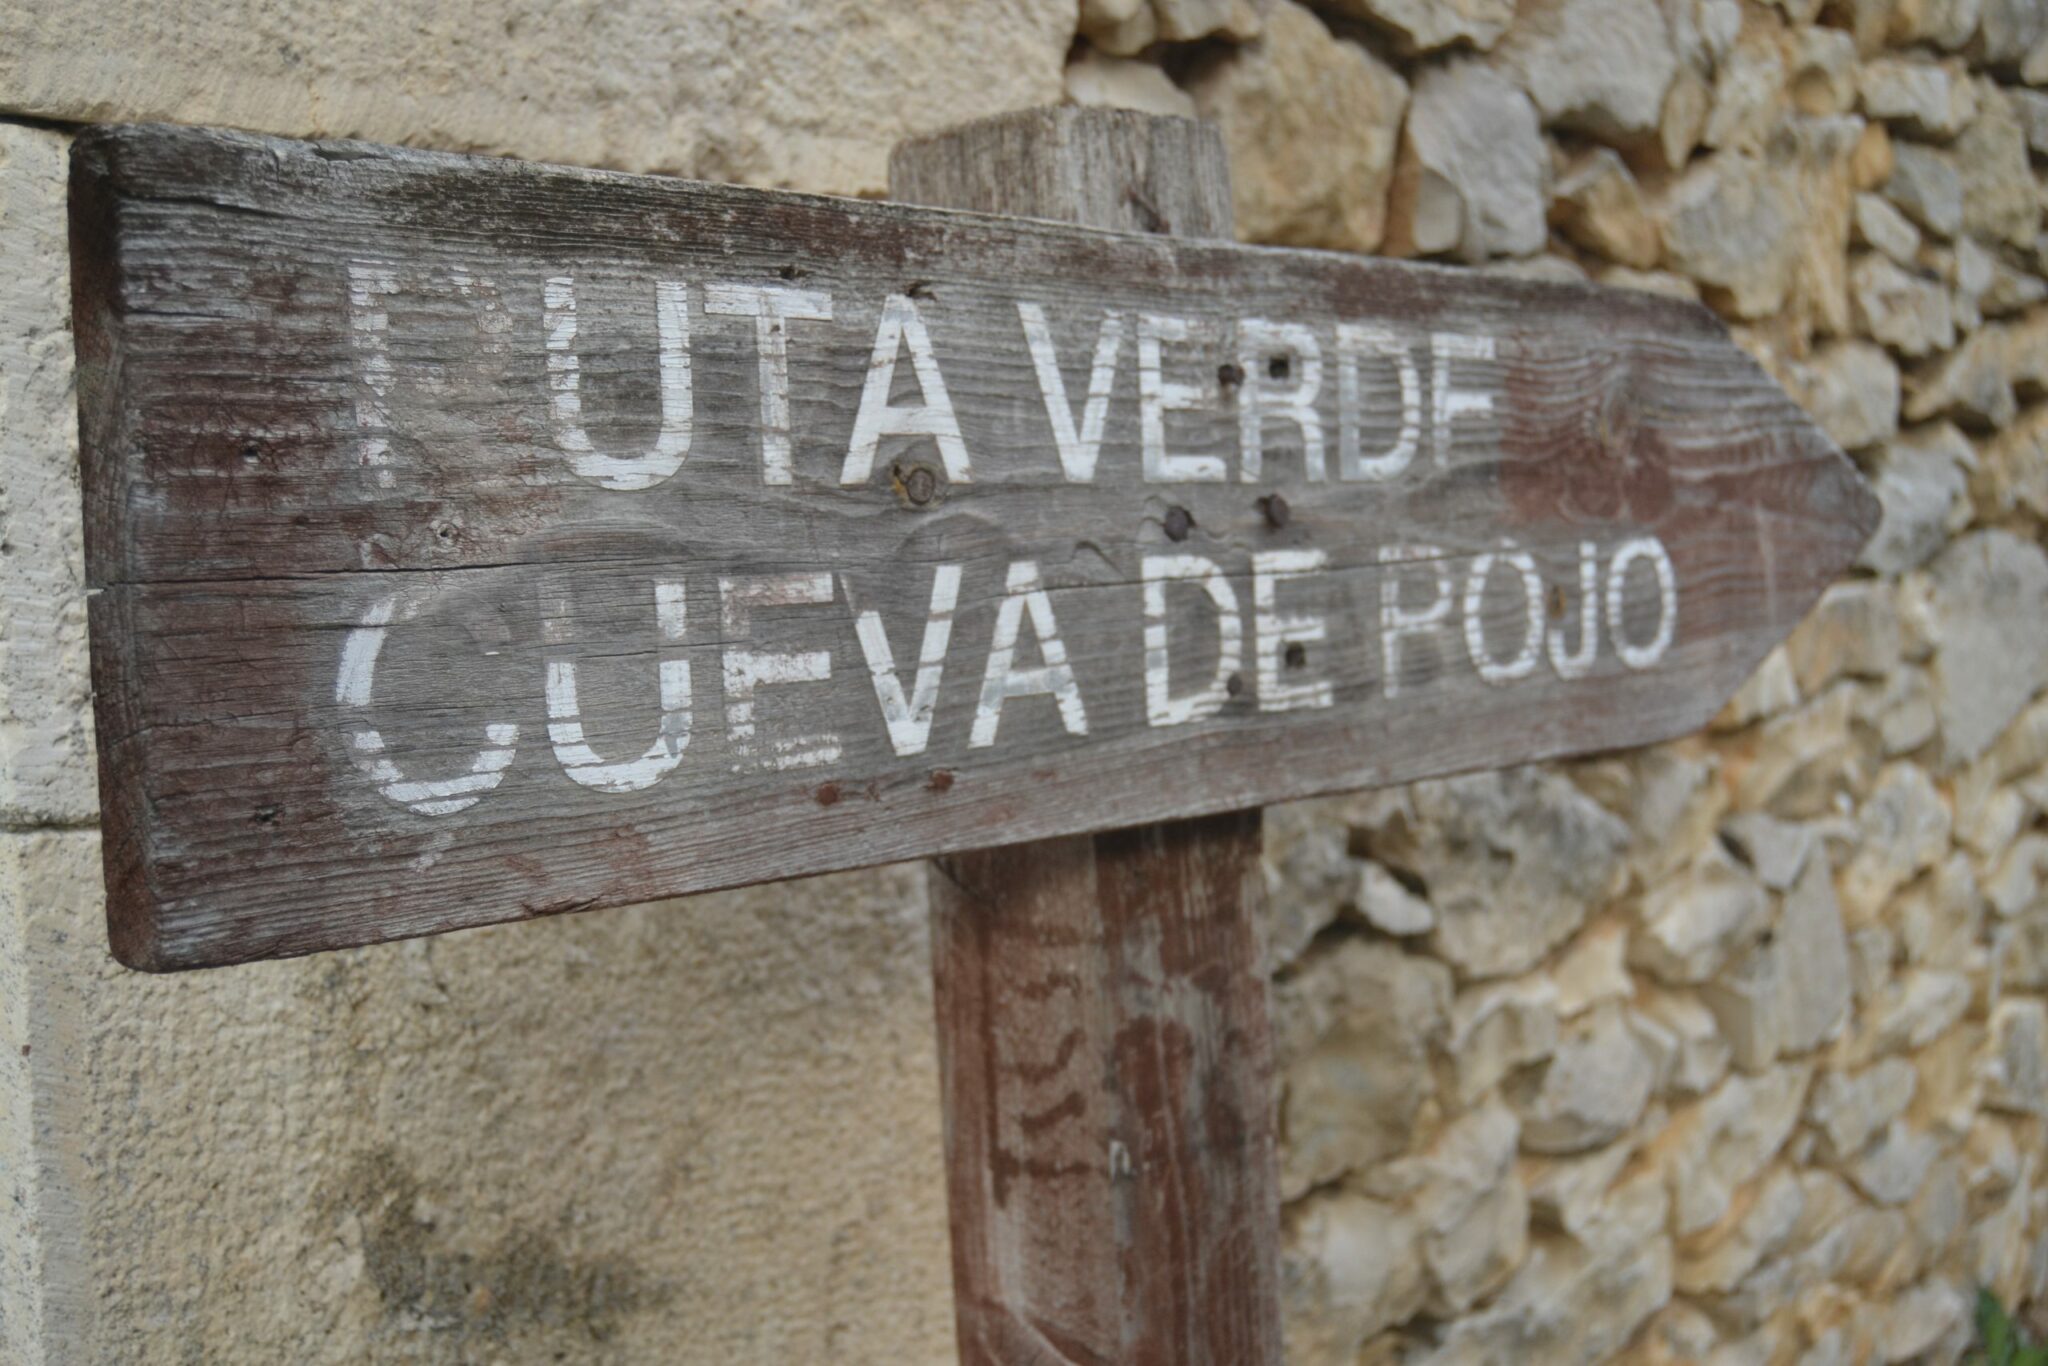 Indicaciones a la Cueva de Rojo en Puentedey